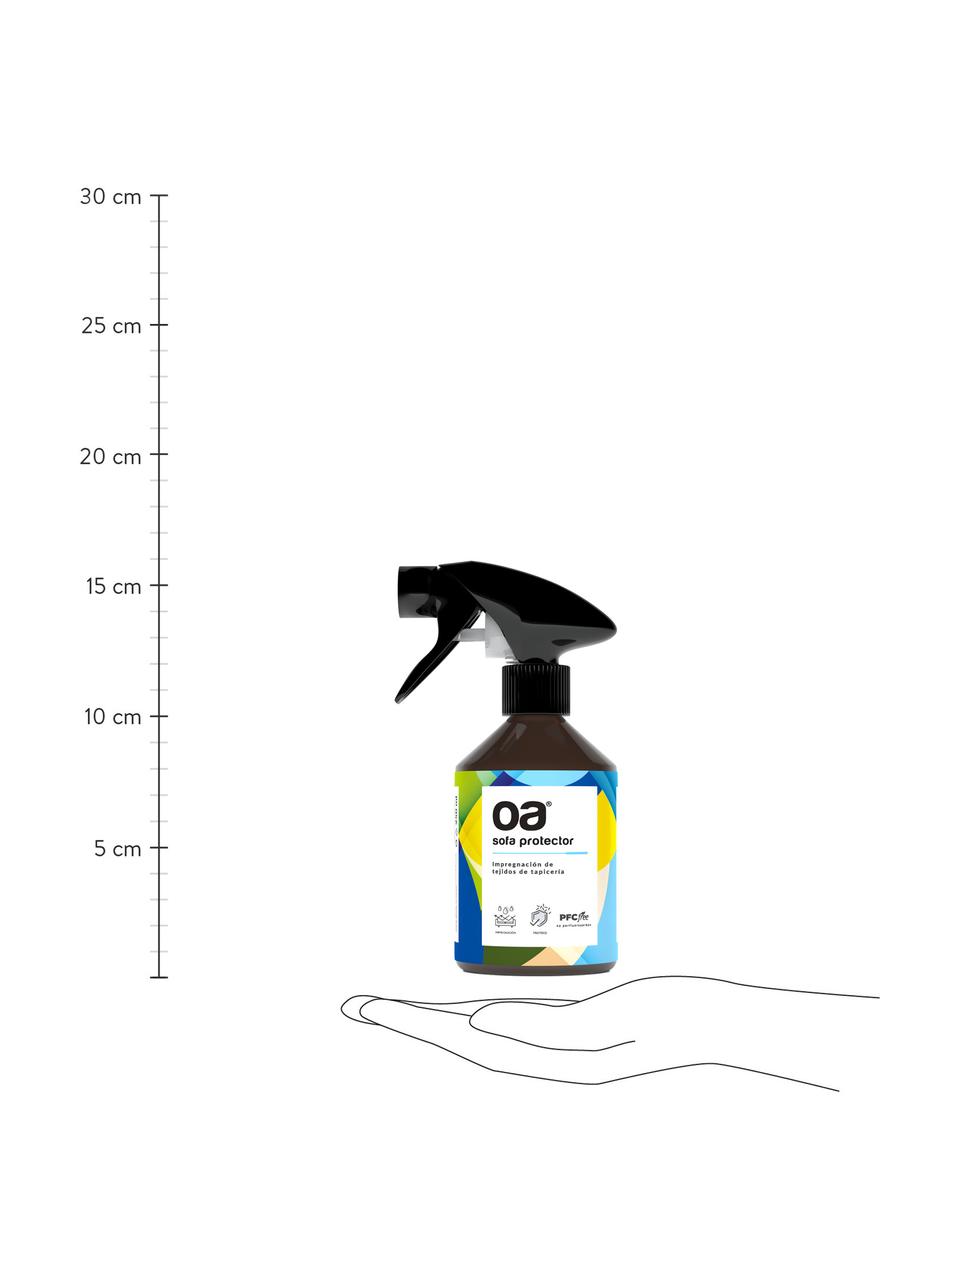 Limpiador de tejidos Protector, Marrón, multicolor, 250 ml